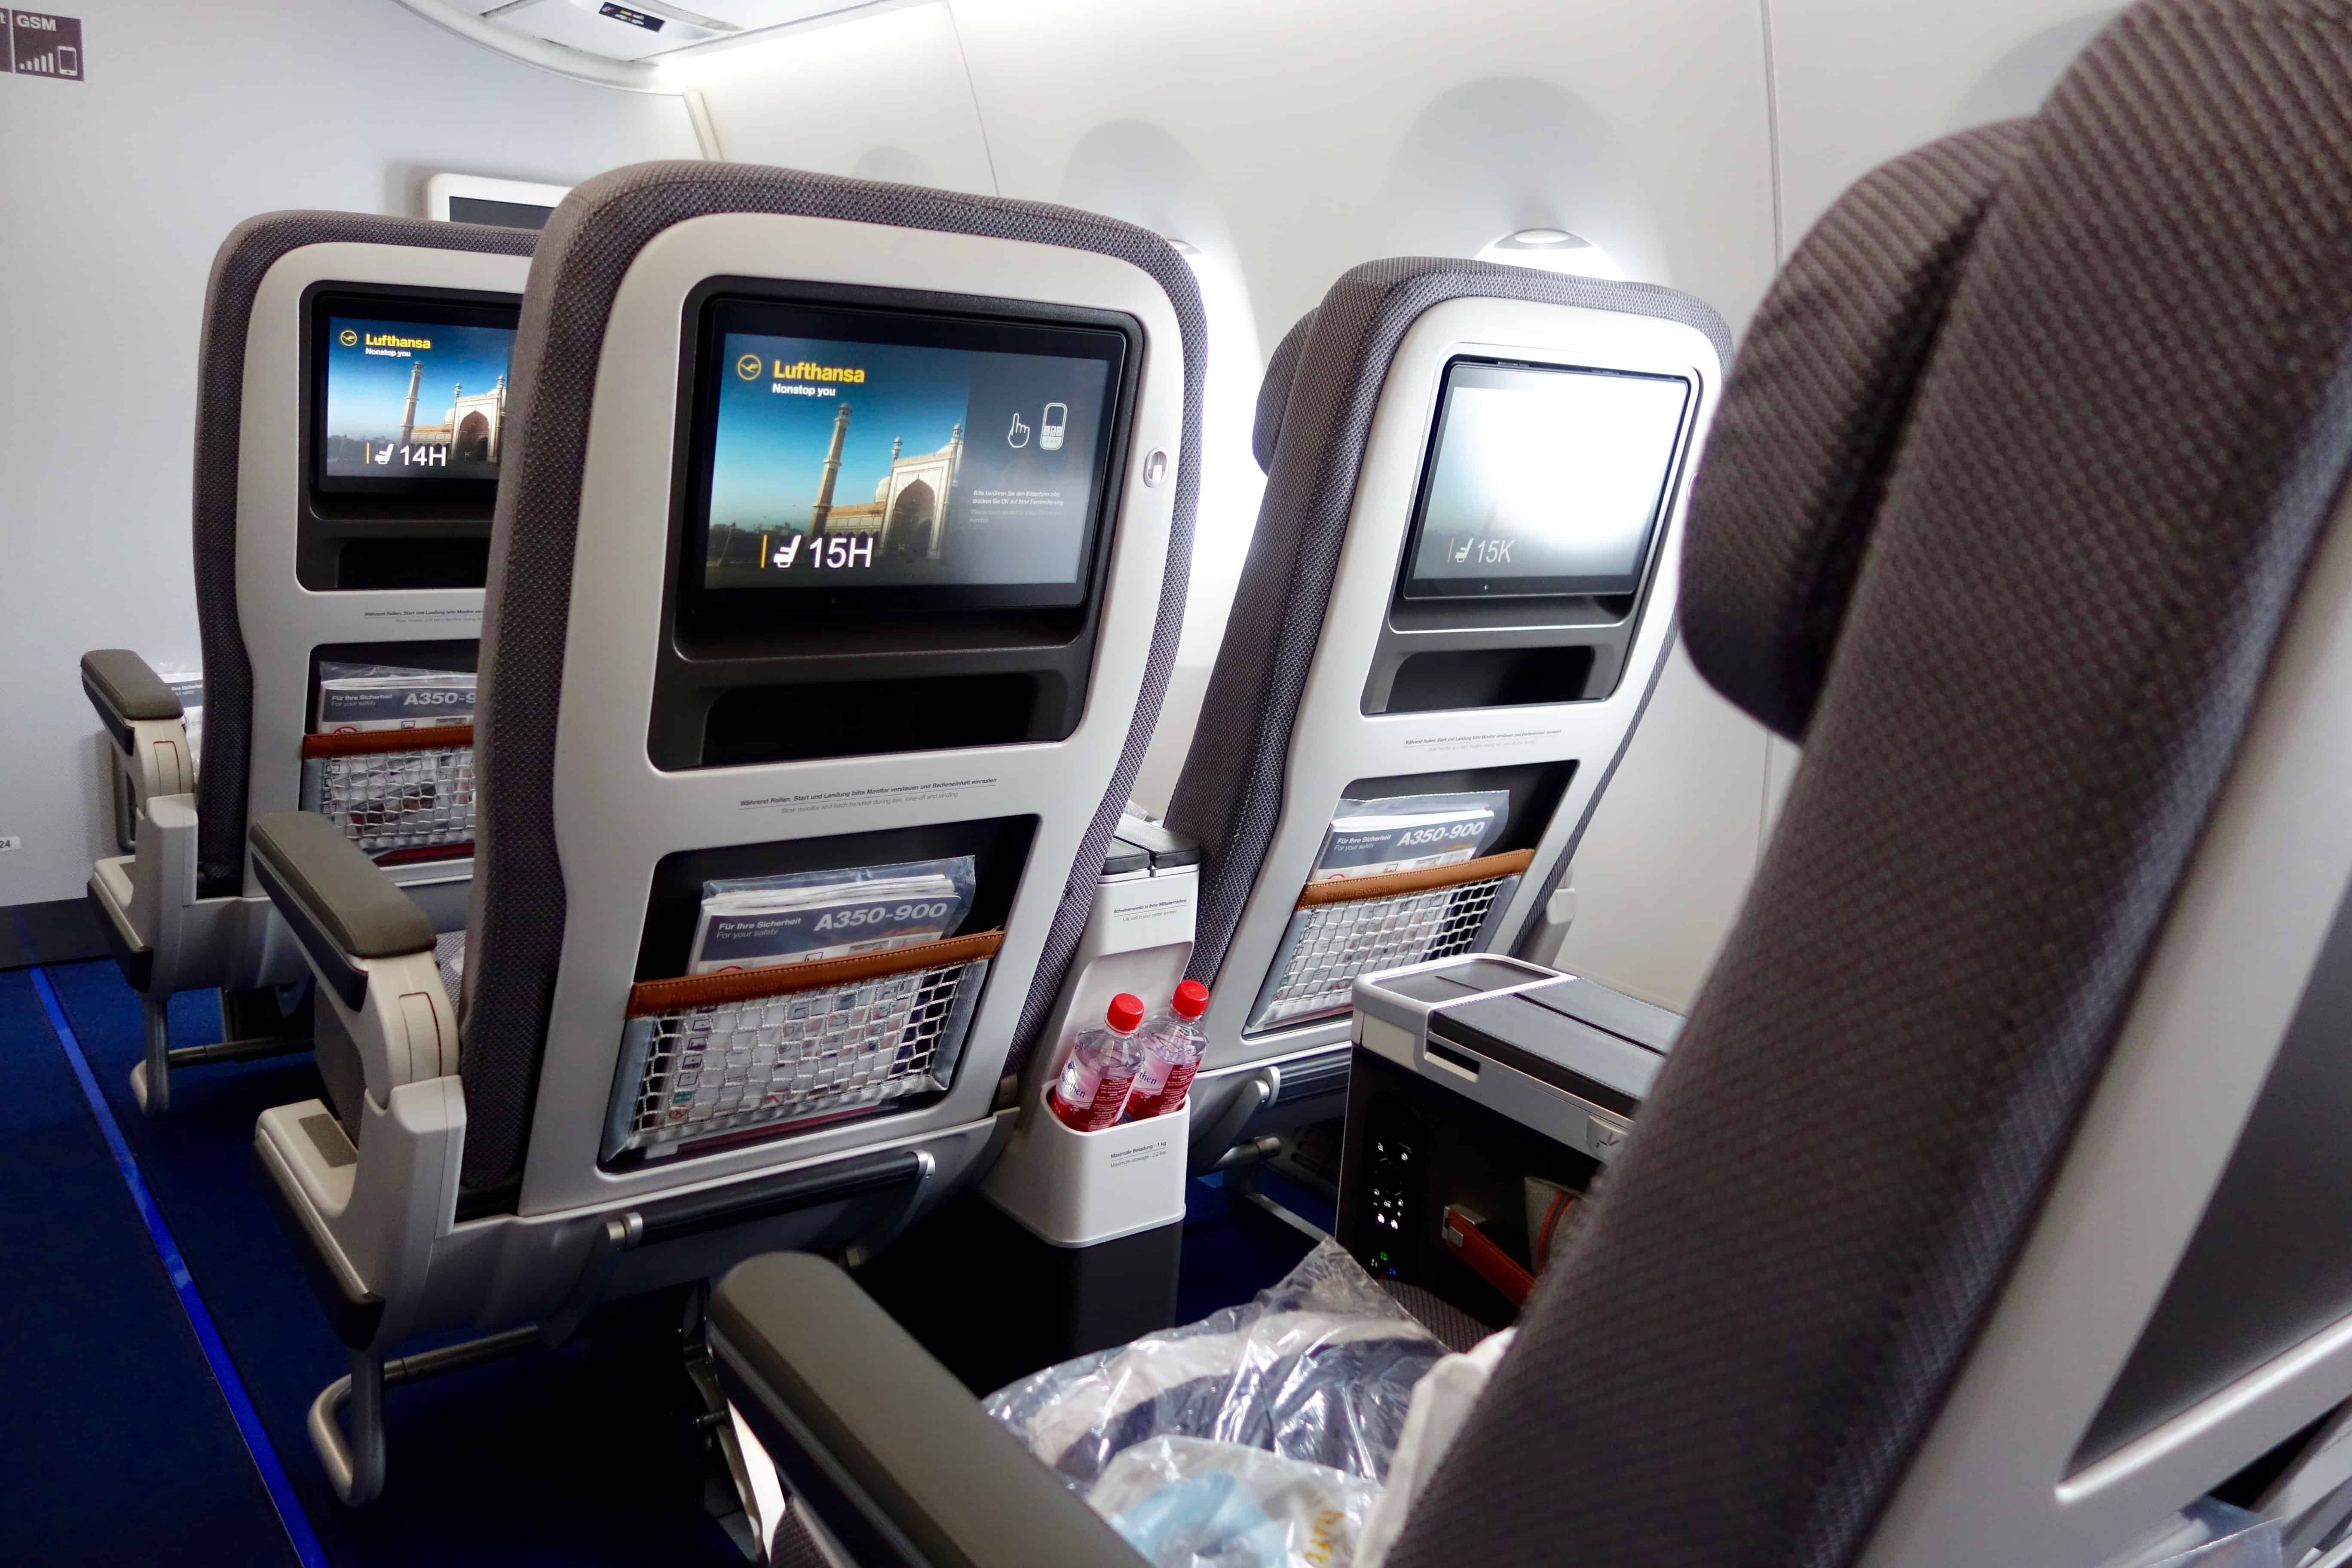 Lufthansa premium economy, lufthansa A350 seats, lufthansa review